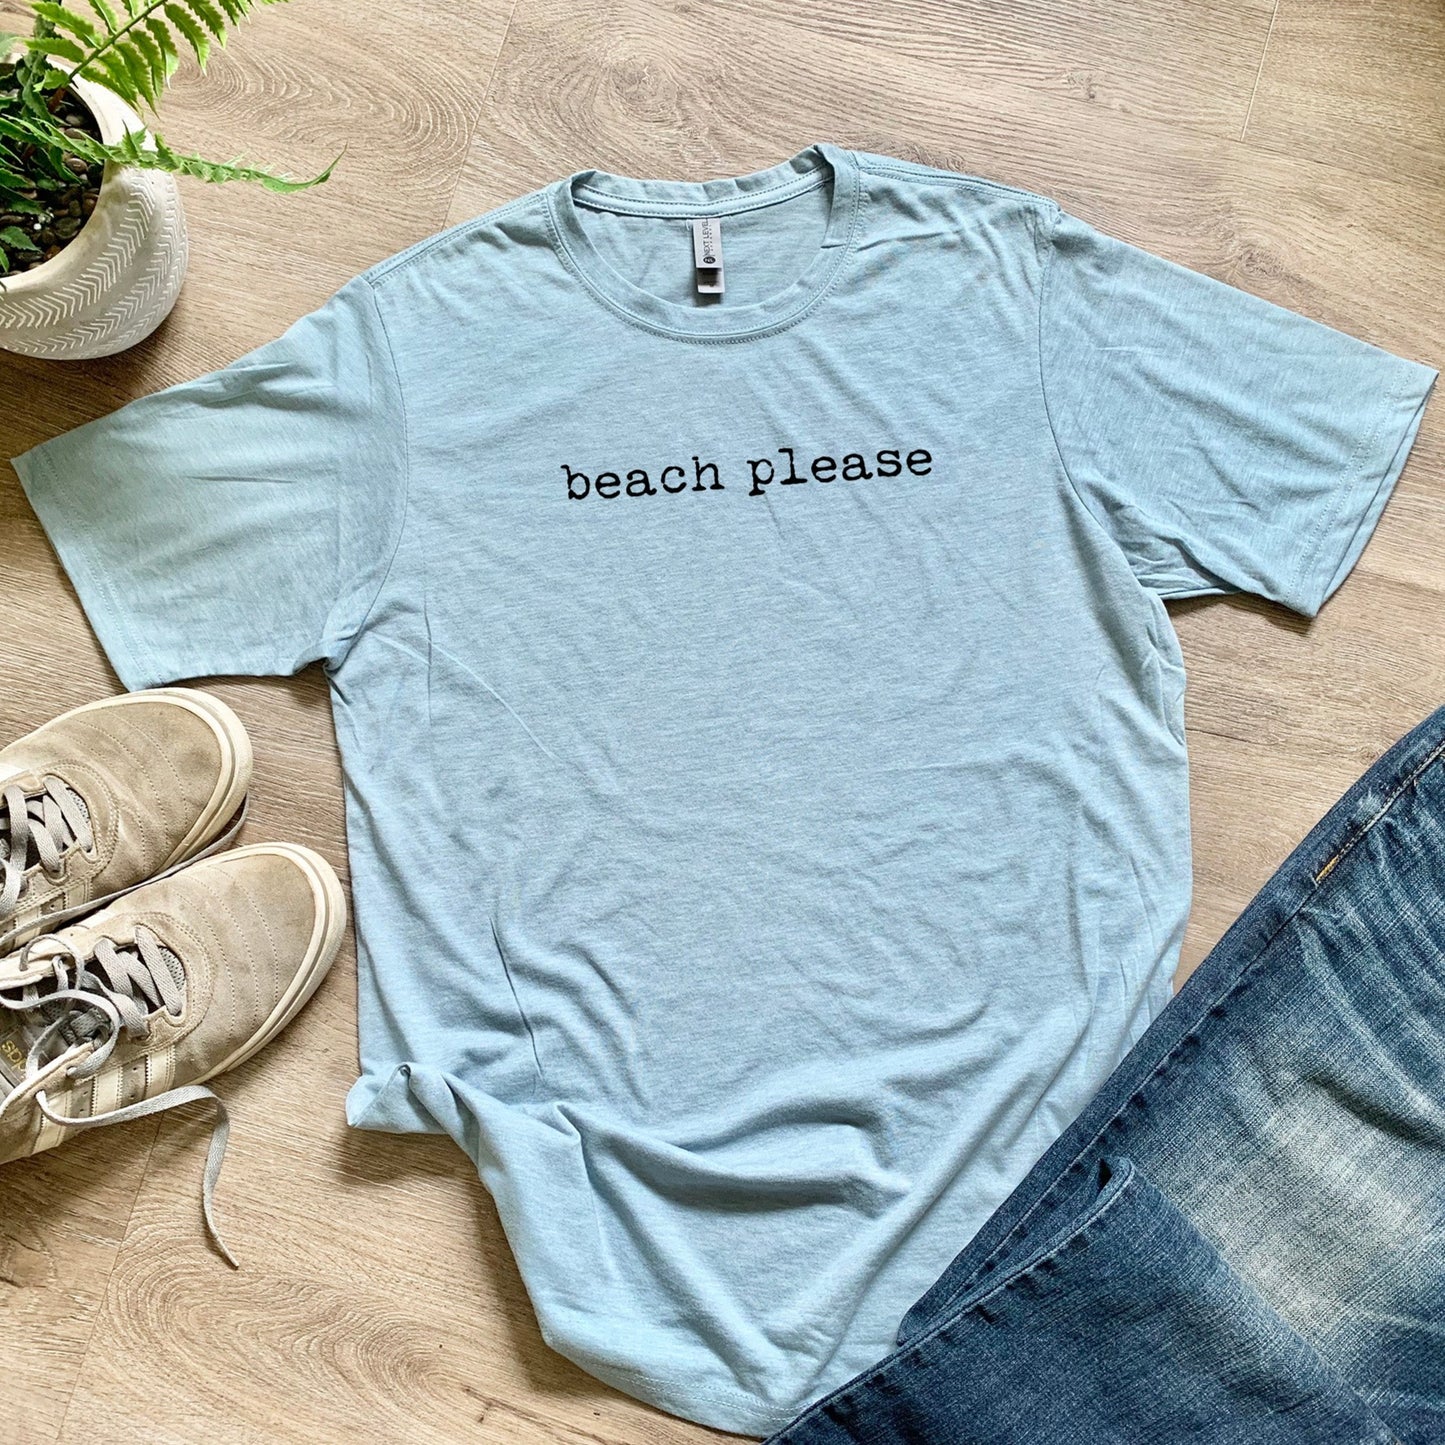 Beach Please - Men's / Unisex Tee - Stonewash Blue or Sage